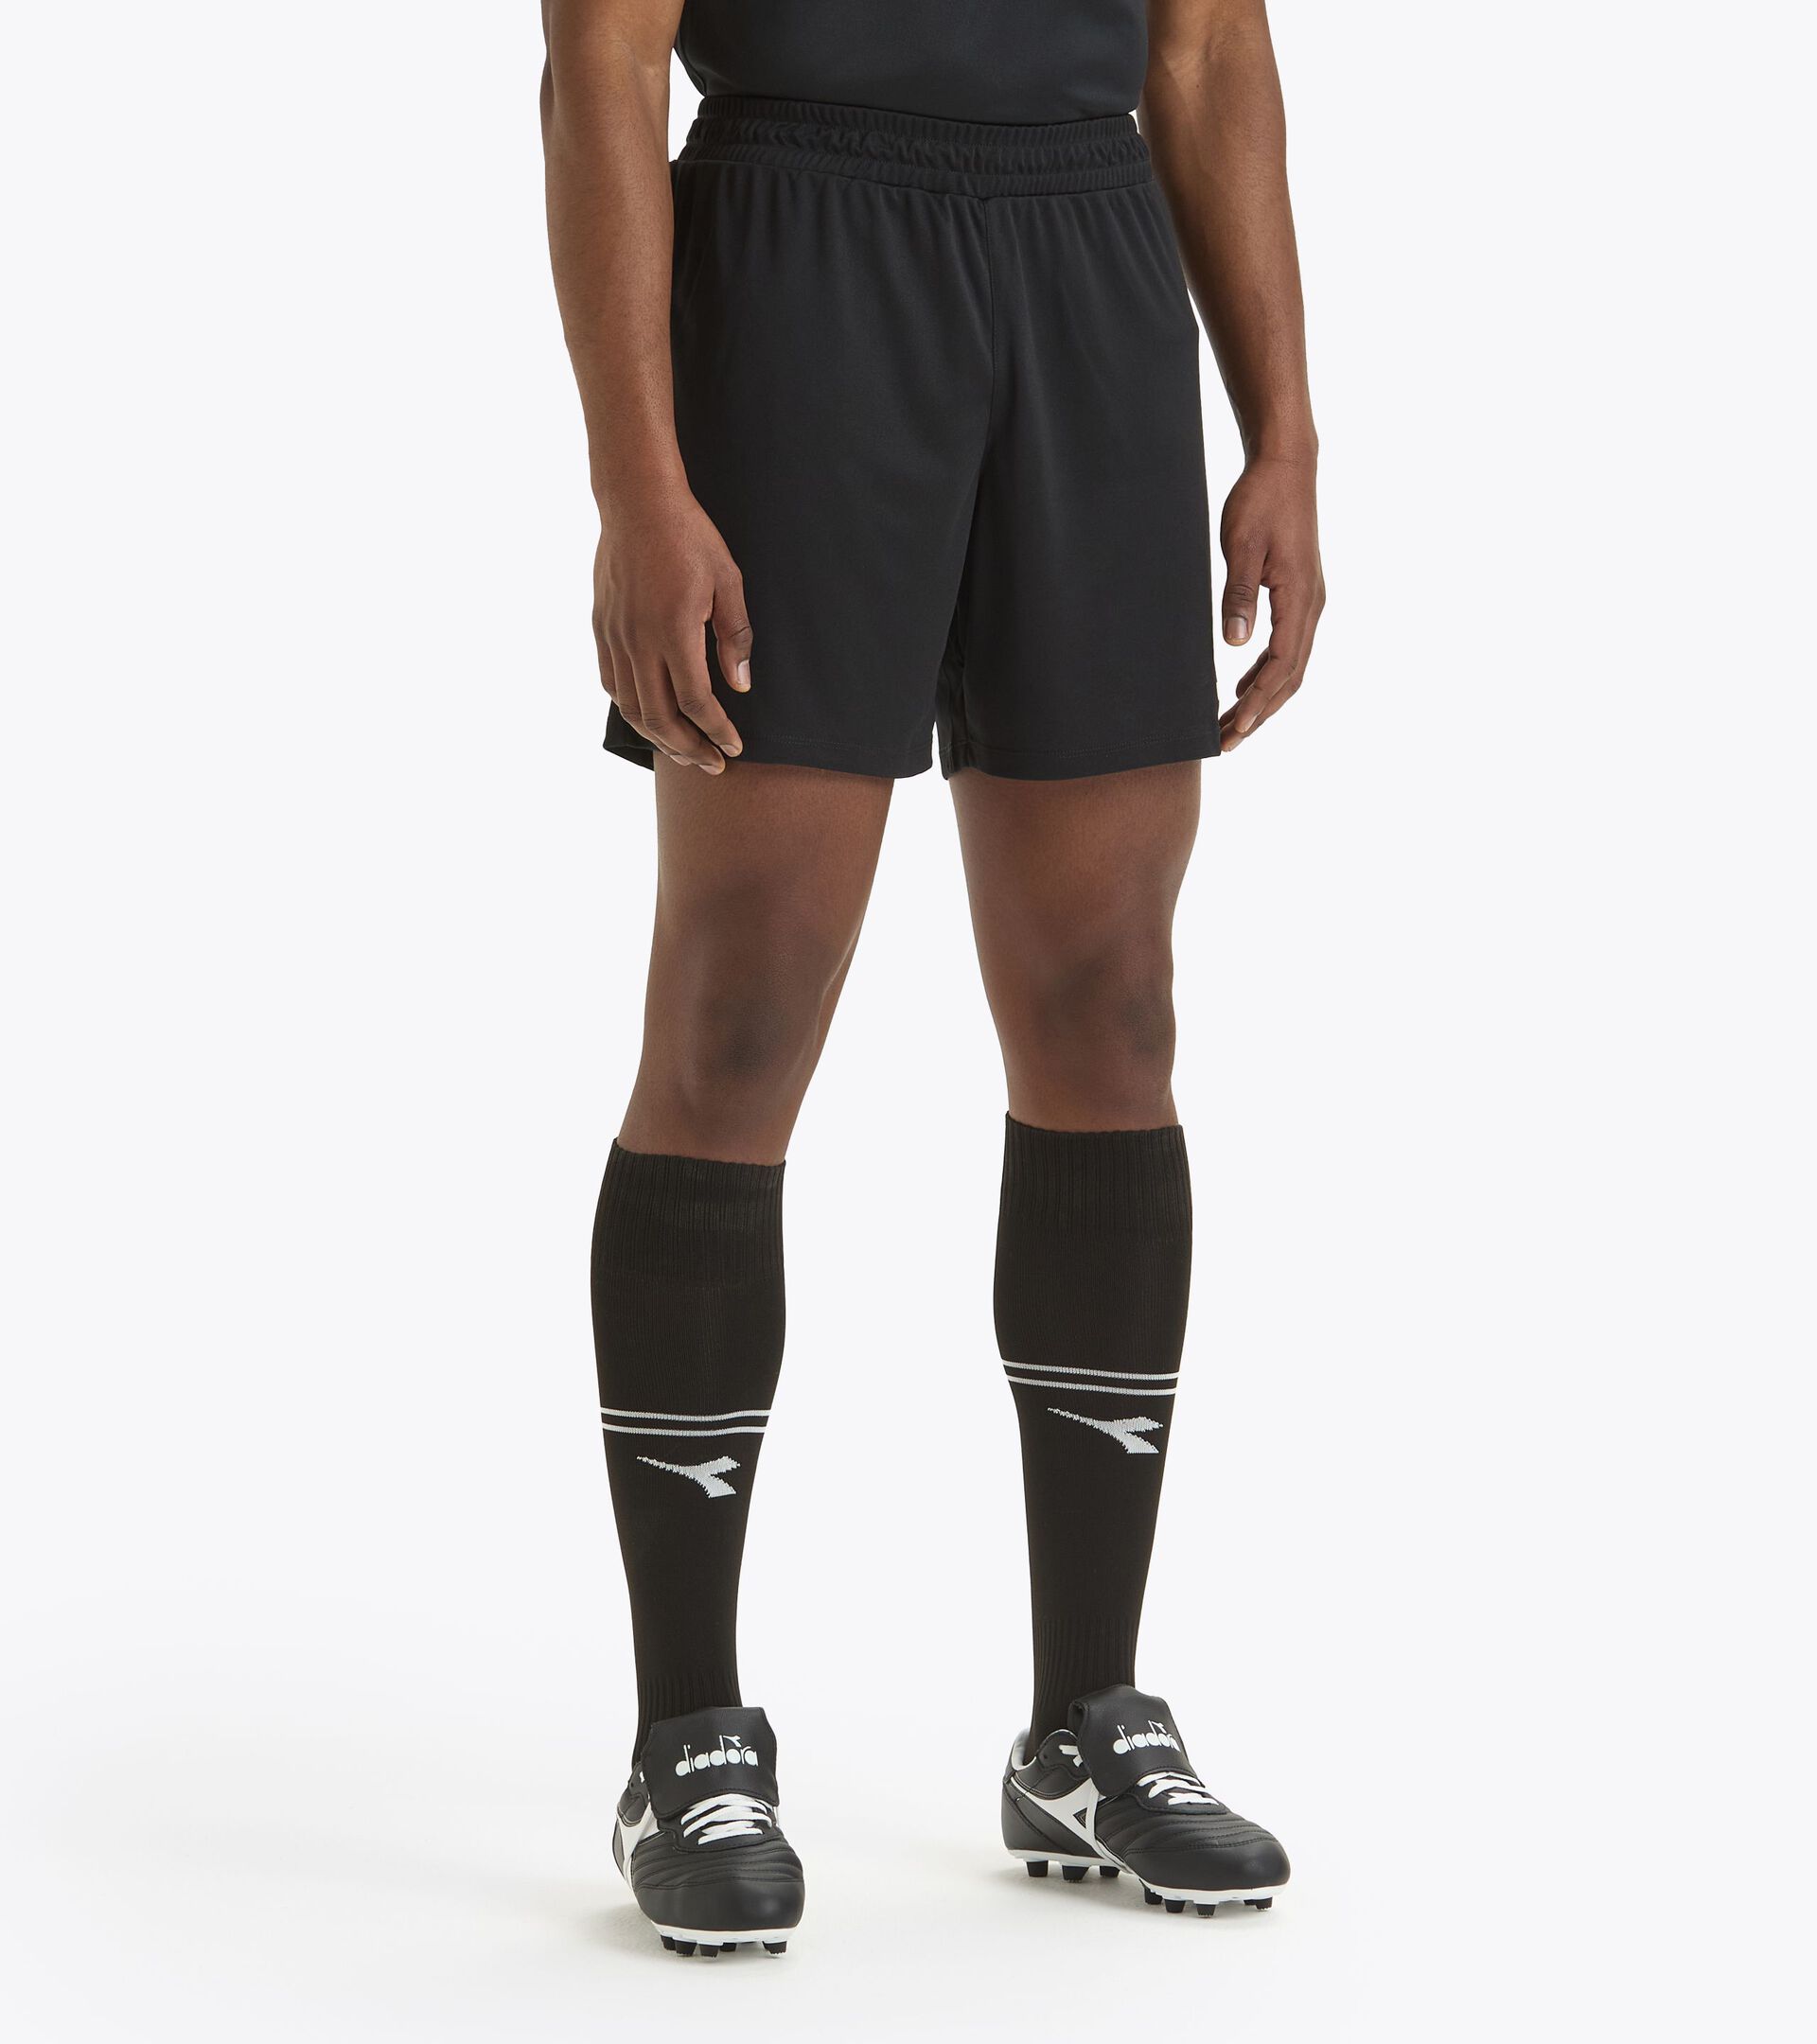 Pantalones cortos de fútbol - Hombre
 MATCH SHORT SCUDETTO NEGRO - Diadora